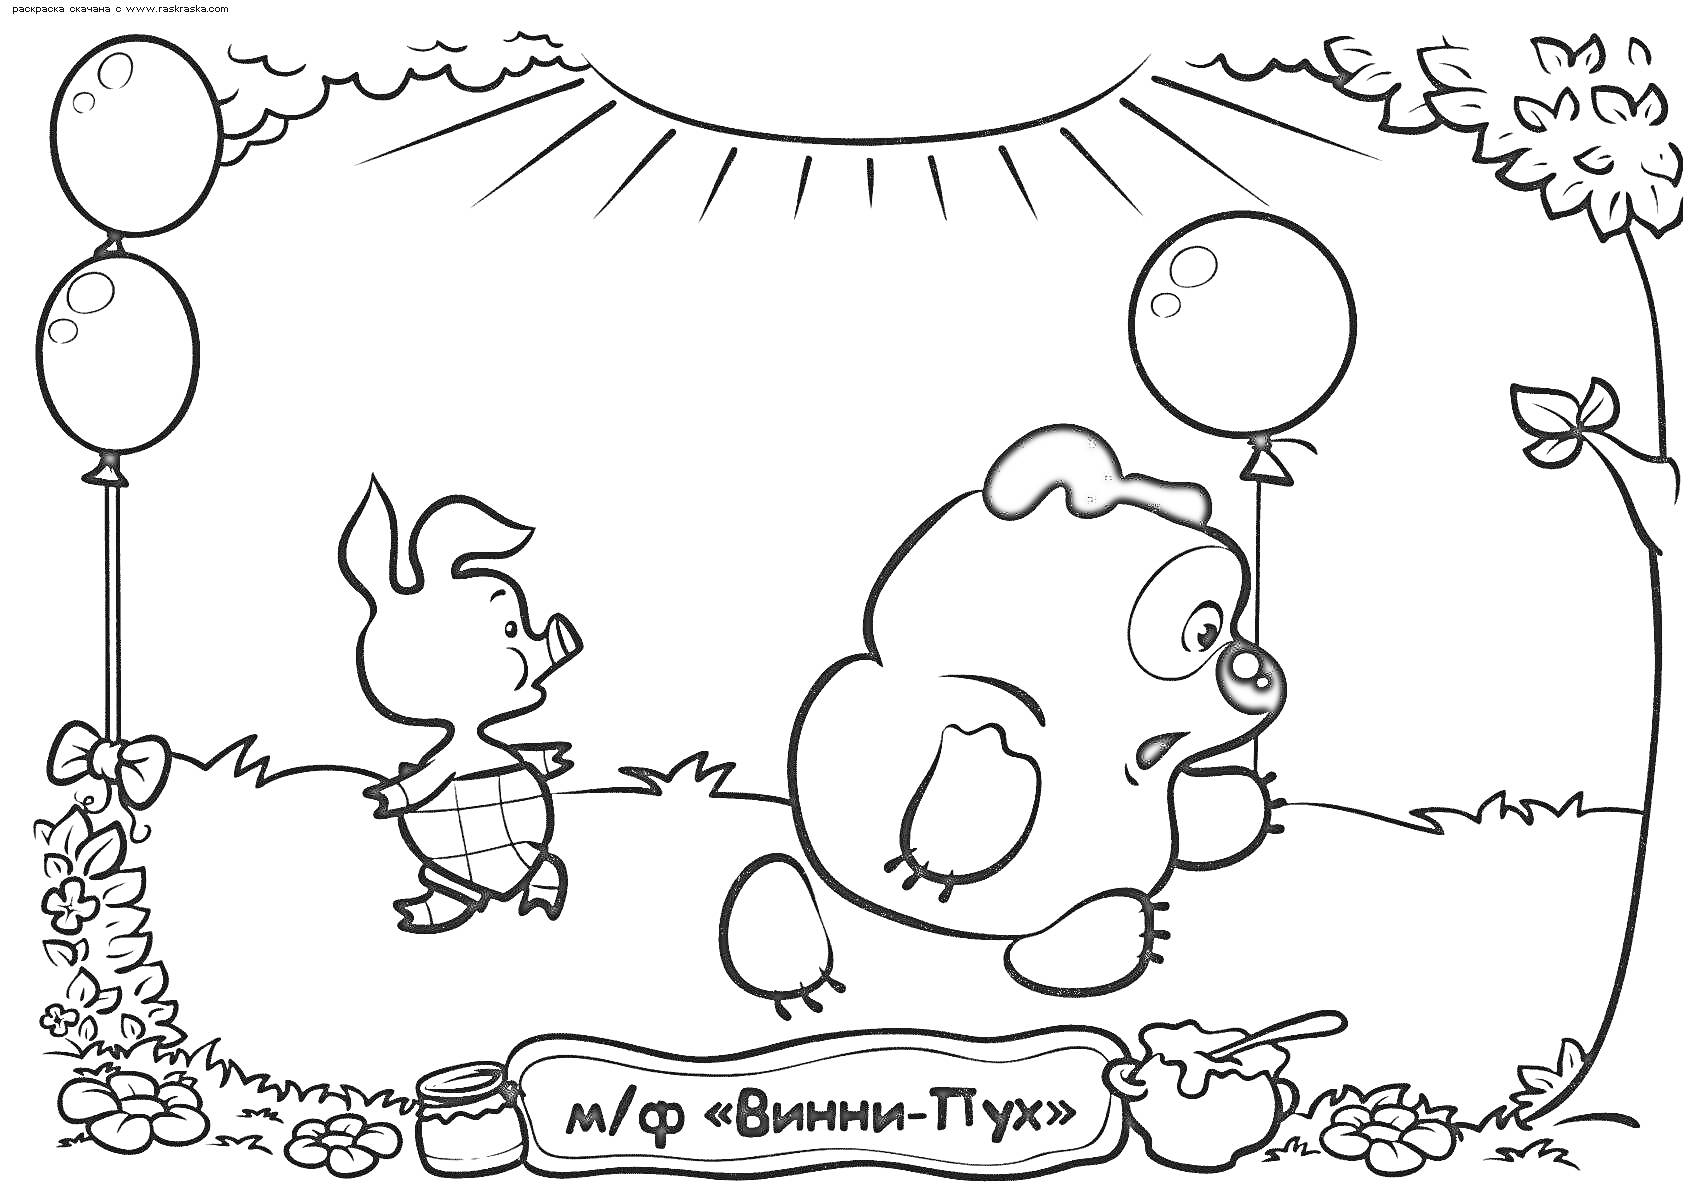 Раскраска Винни Пух и Пятачок с двумя воздушными шарами на лугу, горшок меда и ложка, табличка с надписью, растительность и солнце на фоне